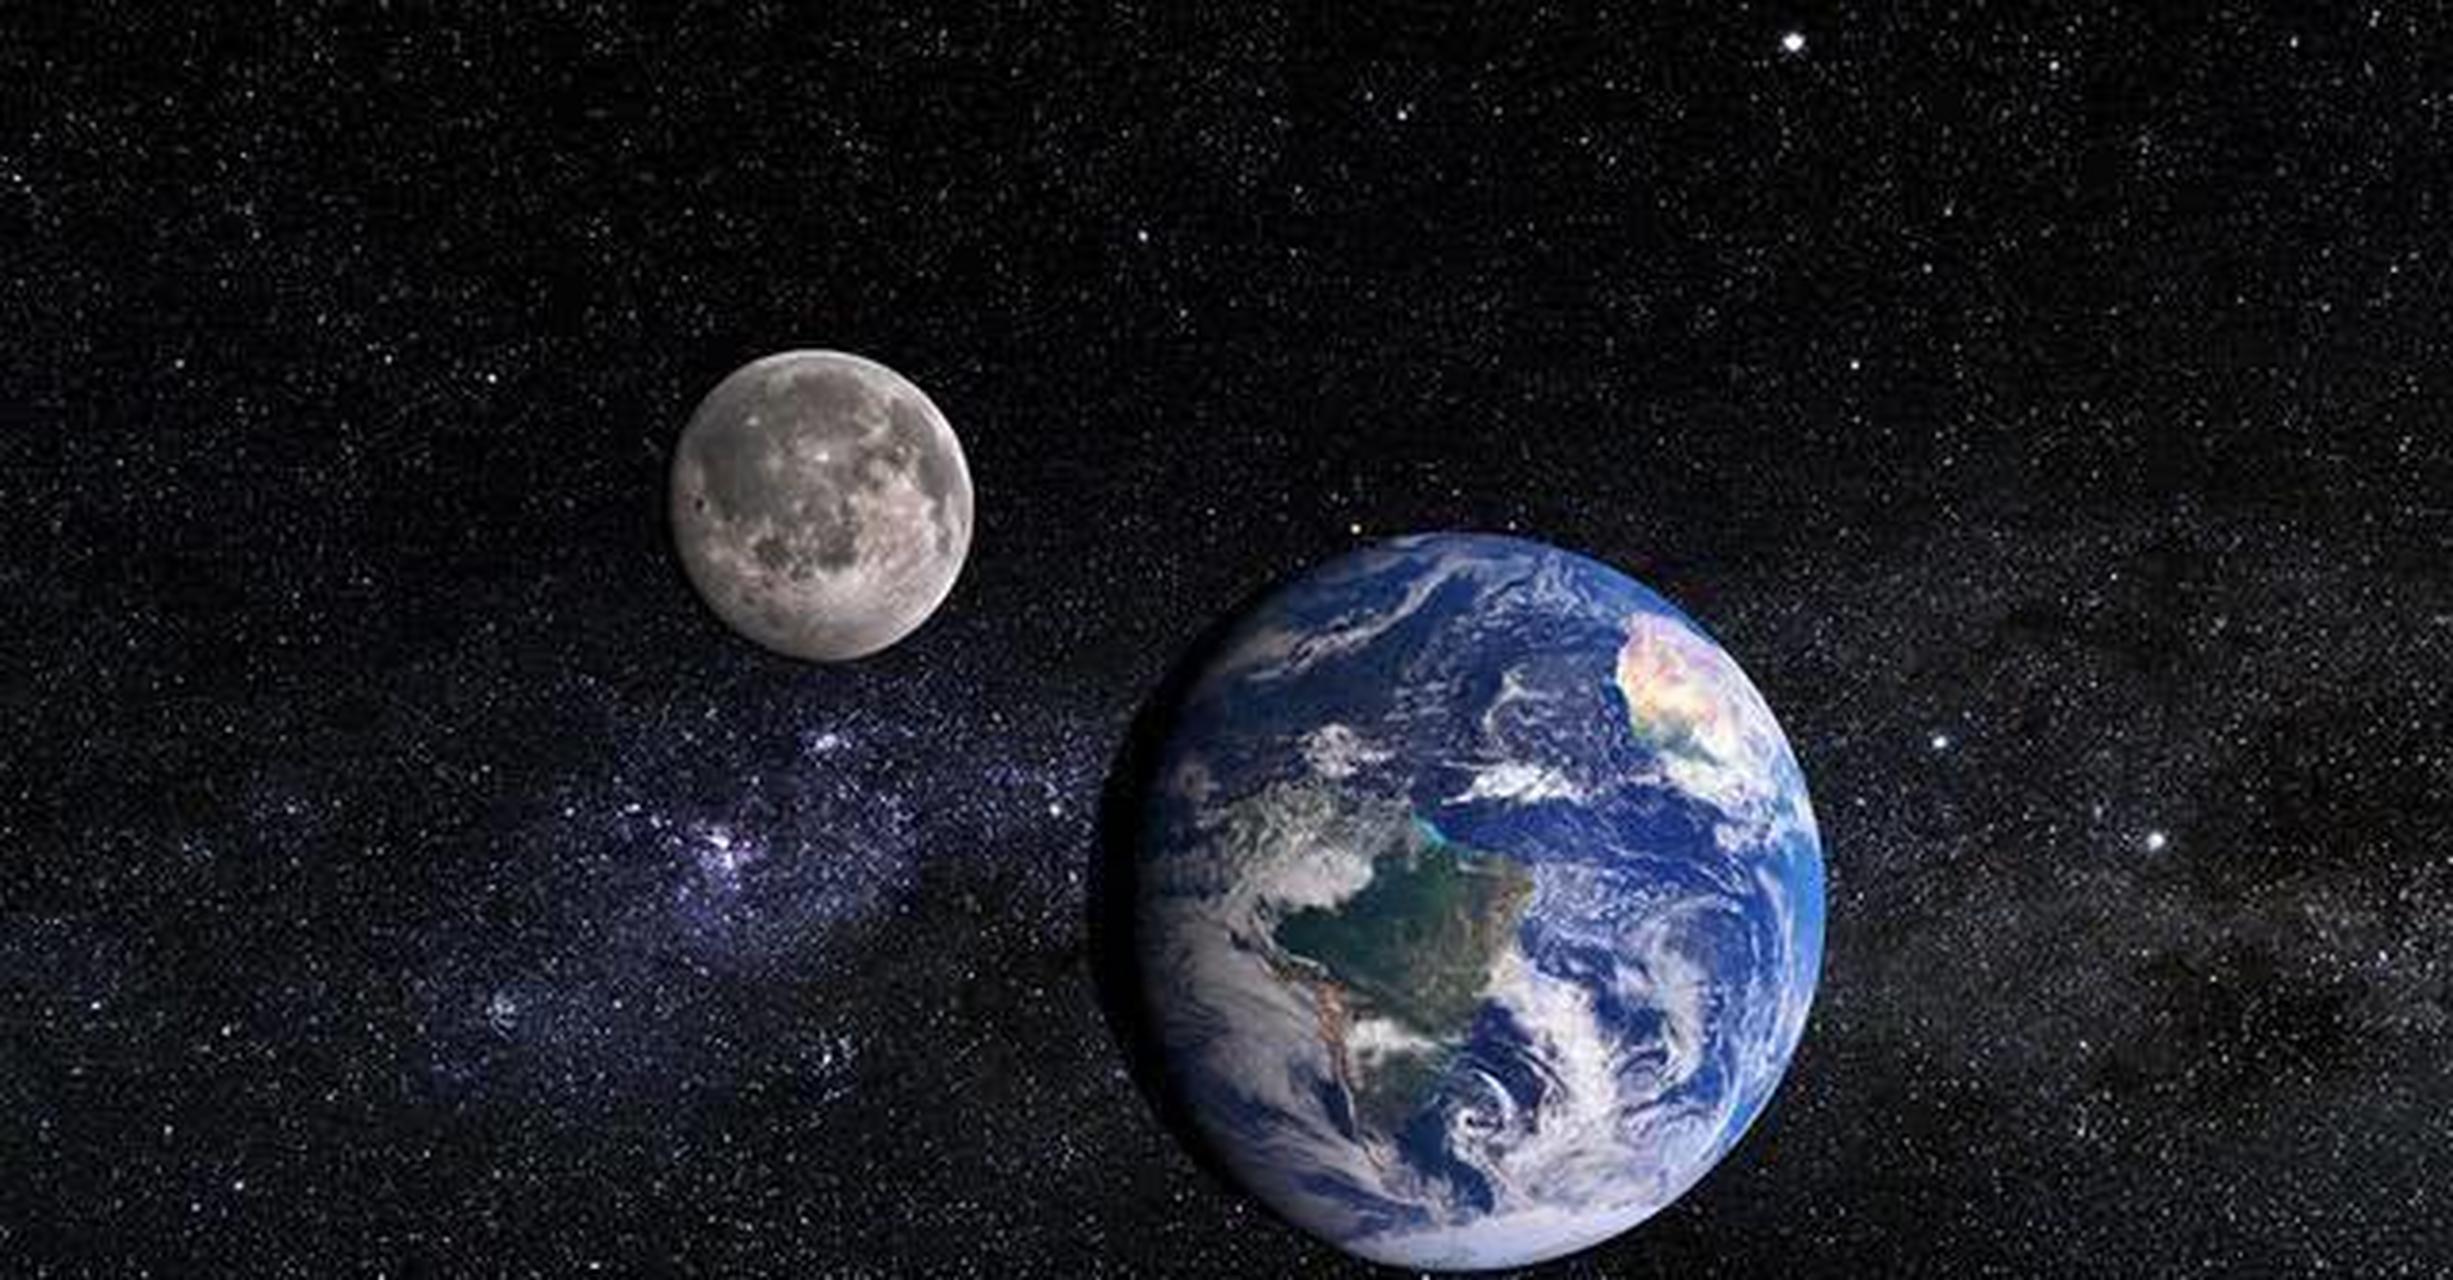 说起月球,大家一定不是很陌生,月球是地球的唯一一颗天然卫星,也是